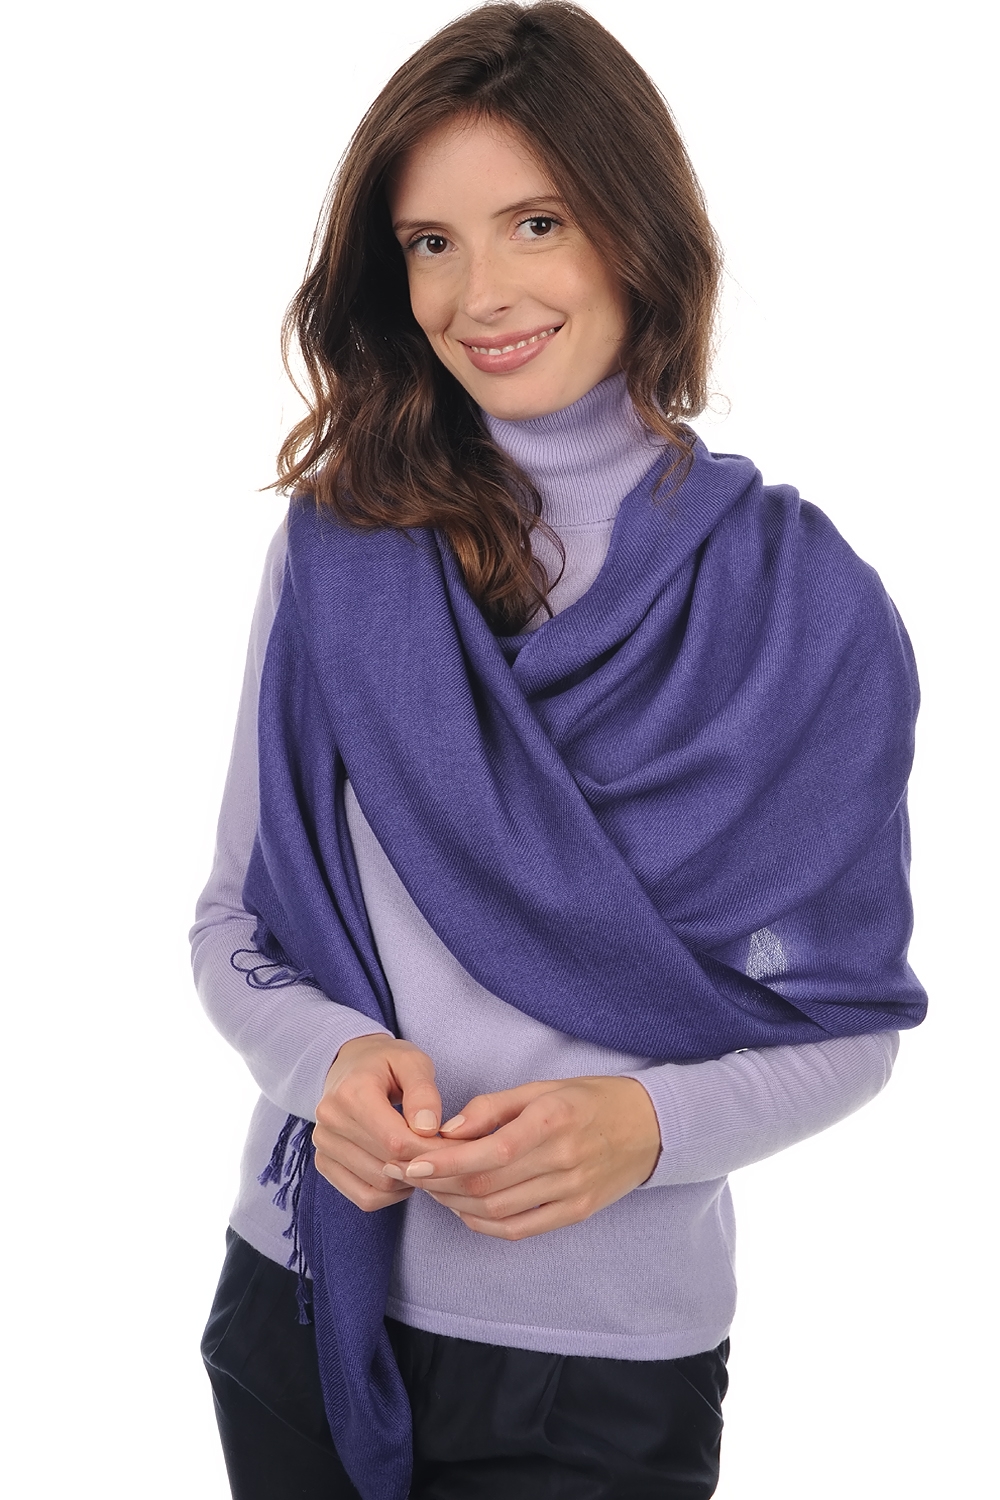 Cachemire pull femme etoles chales diamant violet bleute 204 cm x 92 cm